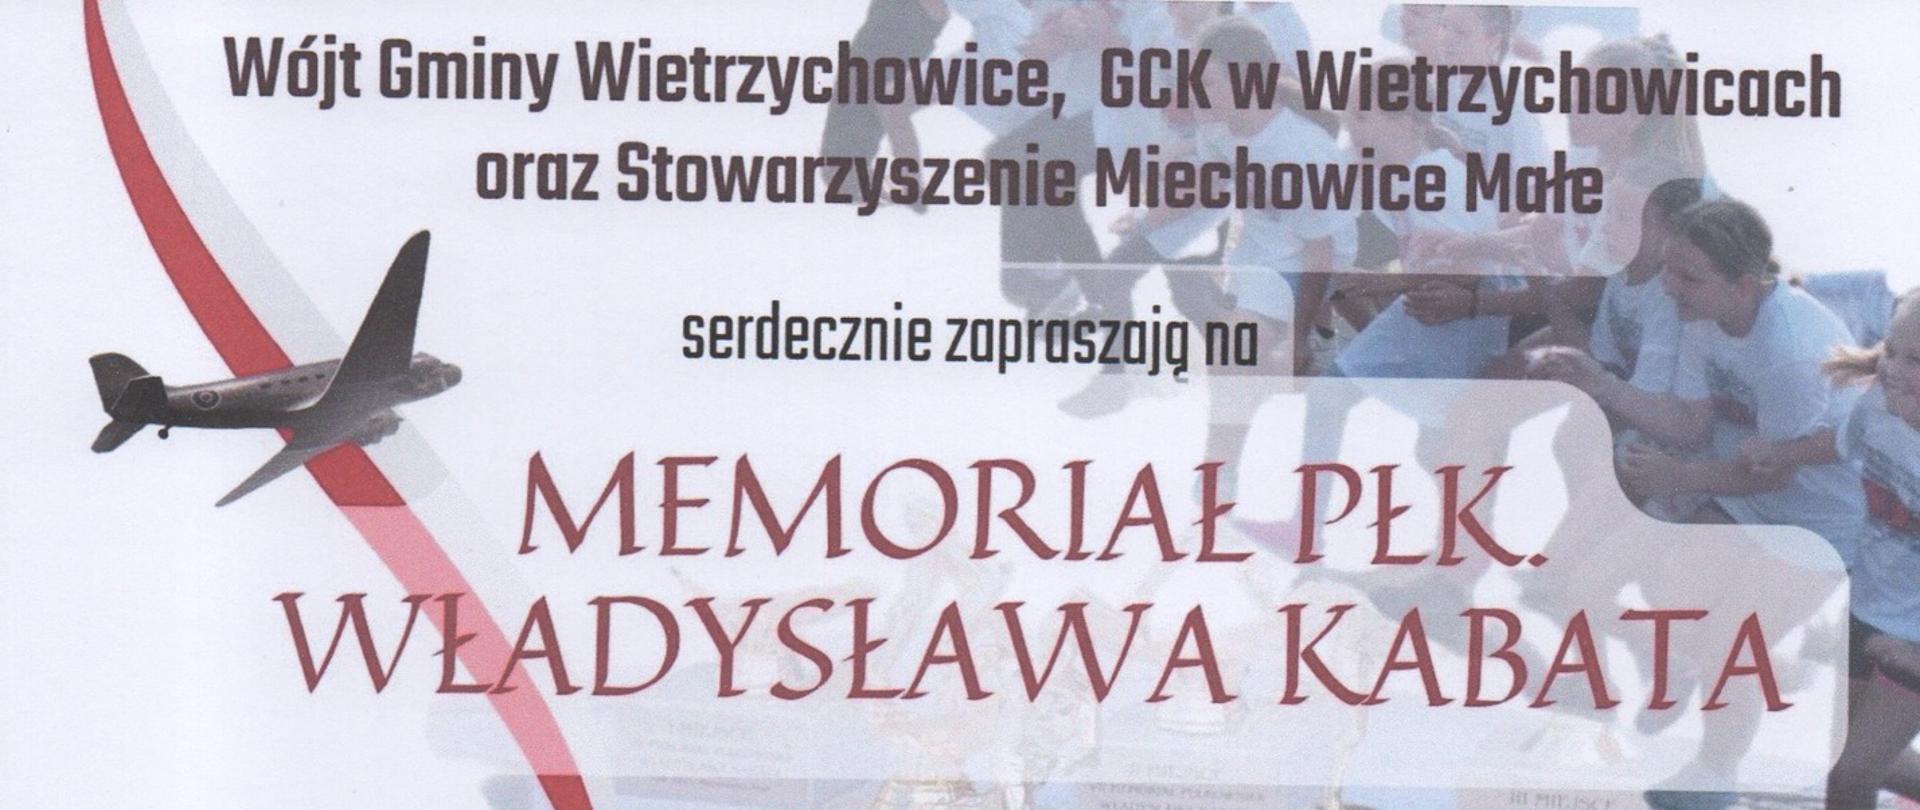 Plakat informacyjny dotyczący wydarzenia z okazji VIII Memoriału Władysława Kabata